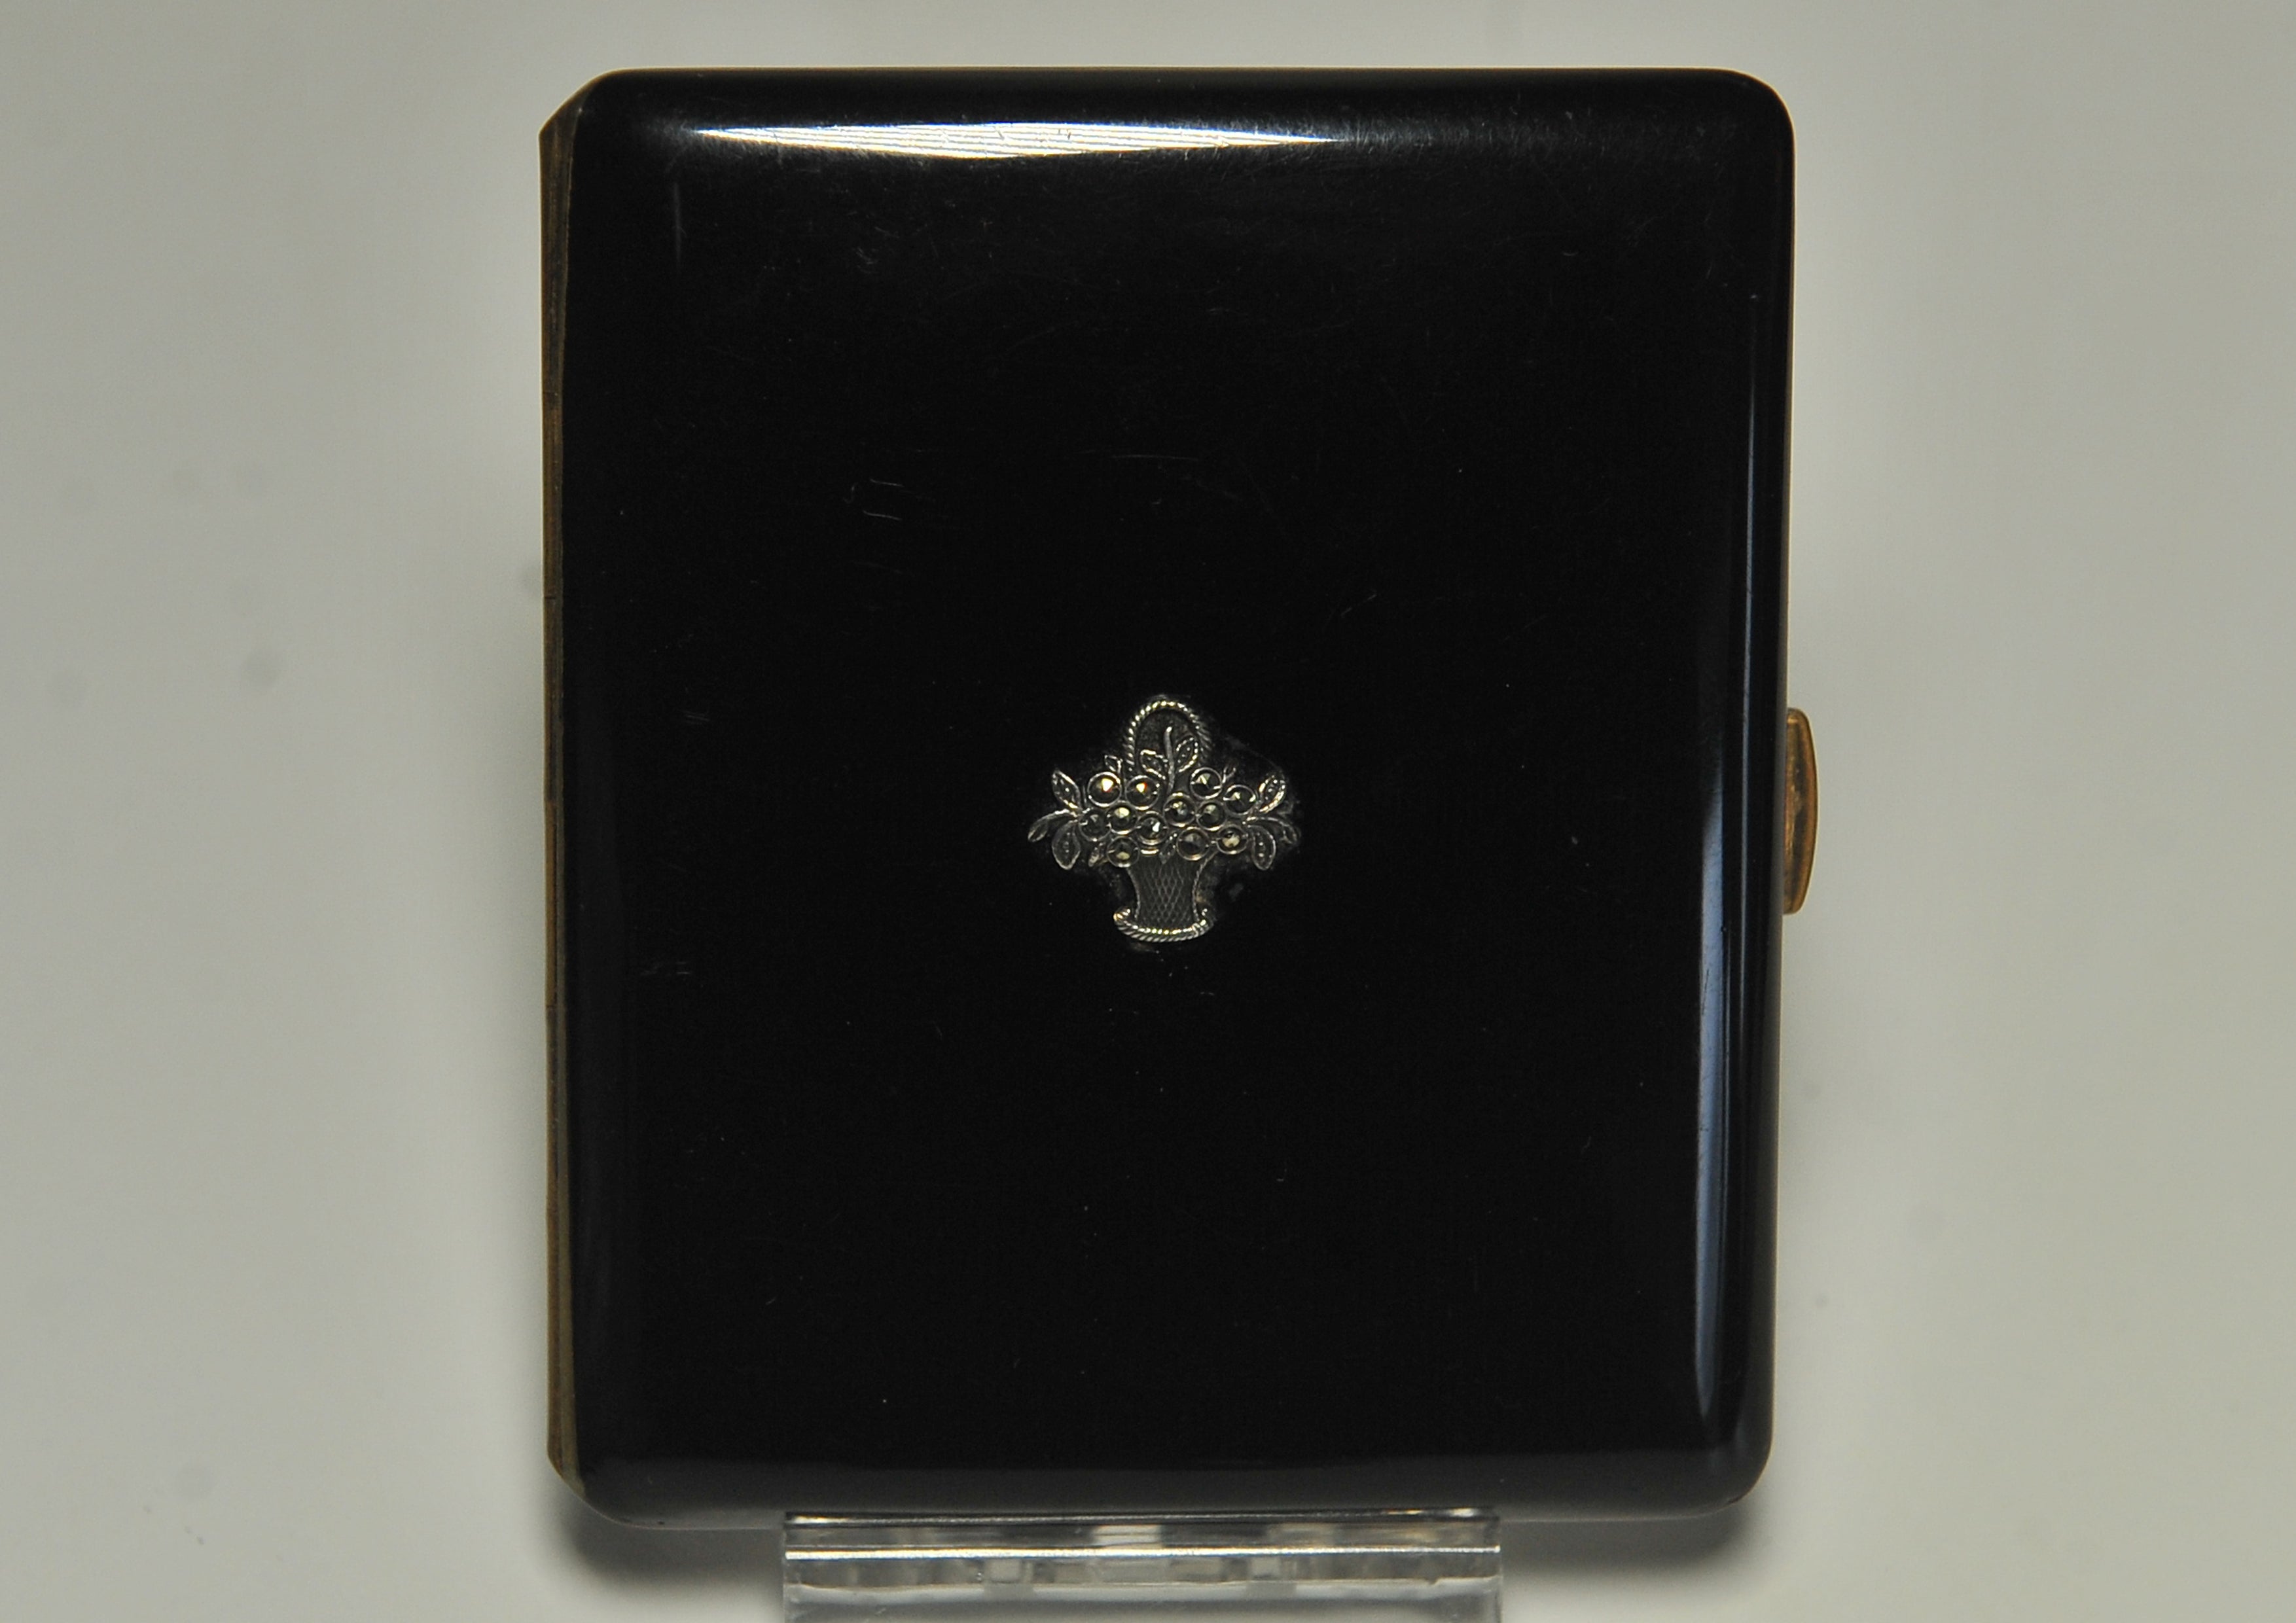 Art Deco Ladies Black Lacquer & Marcasite Cigarette & Matchstick Case 1930's. 
Beide in einem Shagreen-Präsentationskoffer. 

Artikel wurde von der angesehenen britischen Luxusmarke Finnigans of Deansgate Manchester.

The House of Finnigans war ein